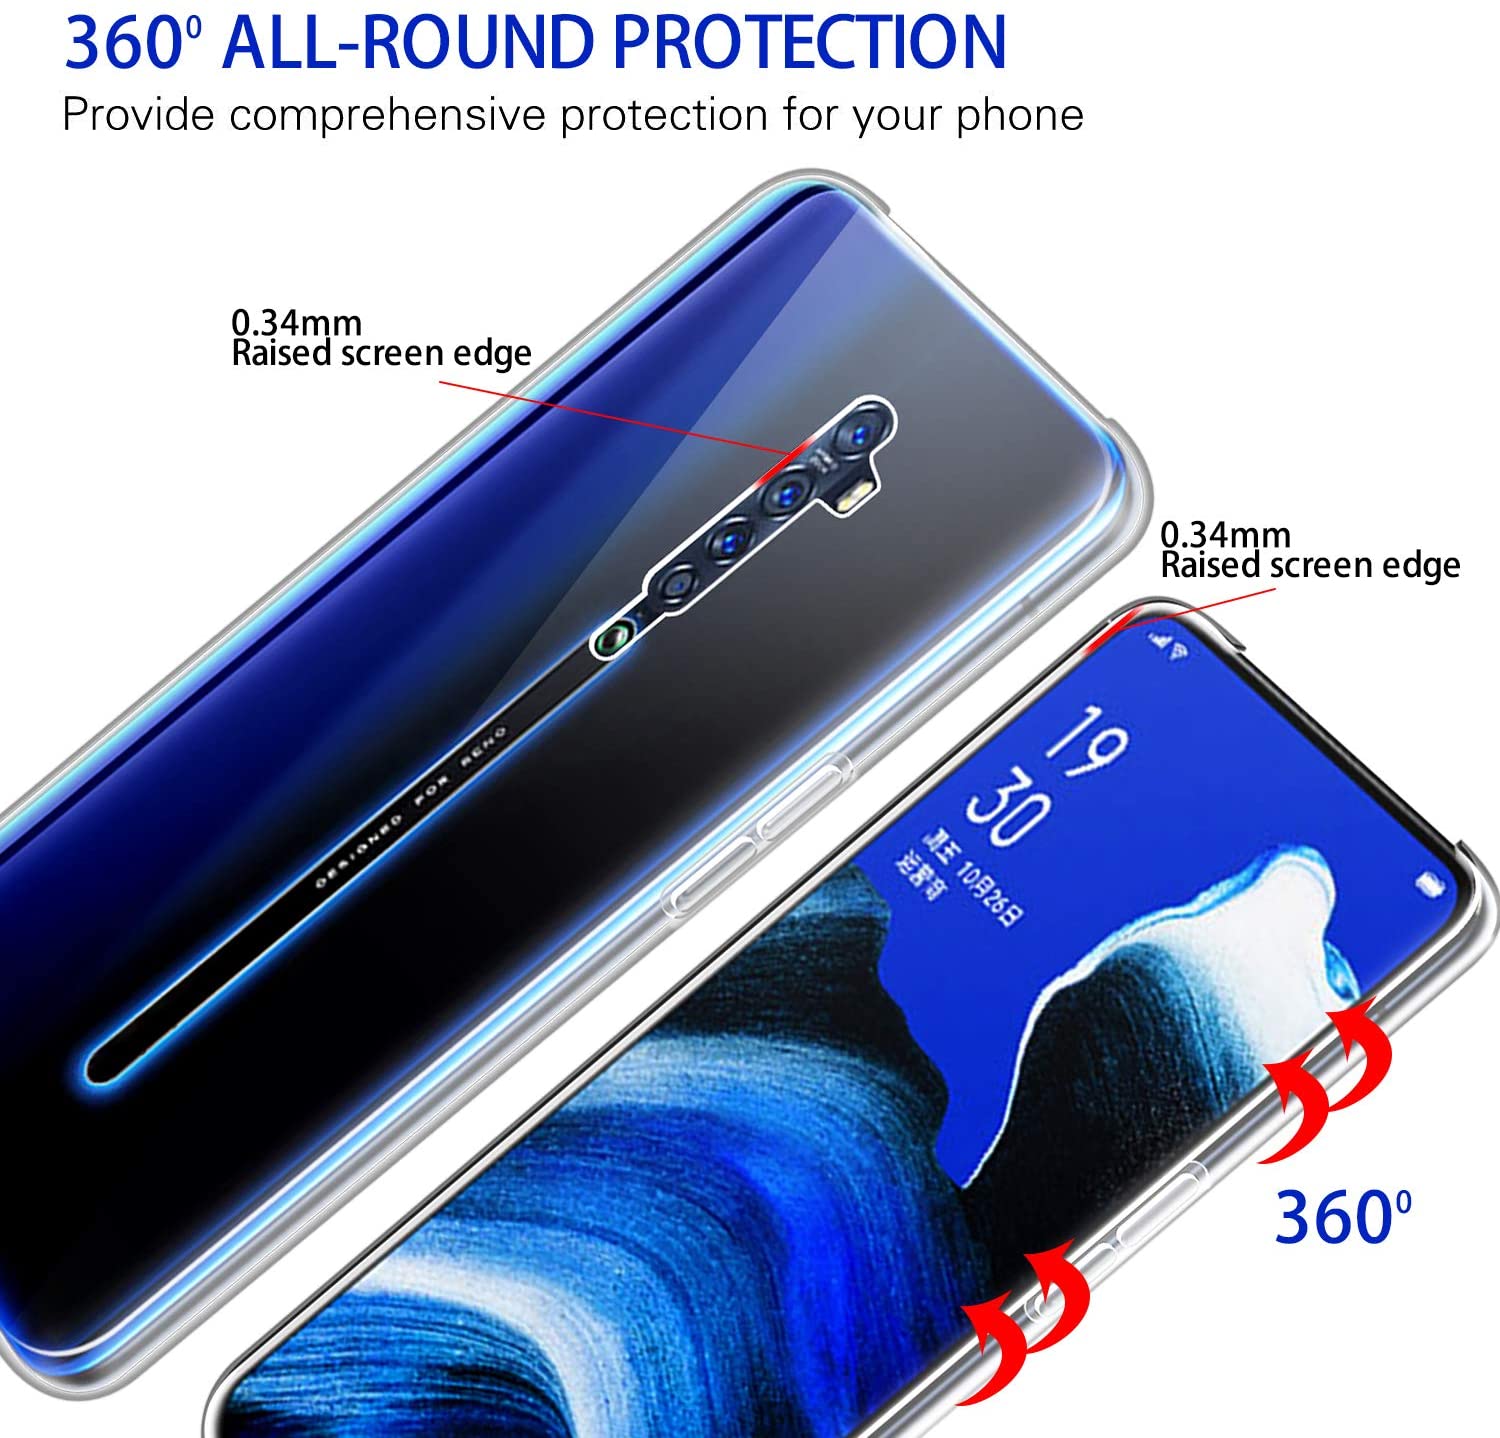 Ốp lưng dẻo silicon cho Oppo Reno 2 hiệu HOTCASE Ultra thin siêu mỏng 0.6mm, chống trầy, chống bụi - Hàng nhập khẩu